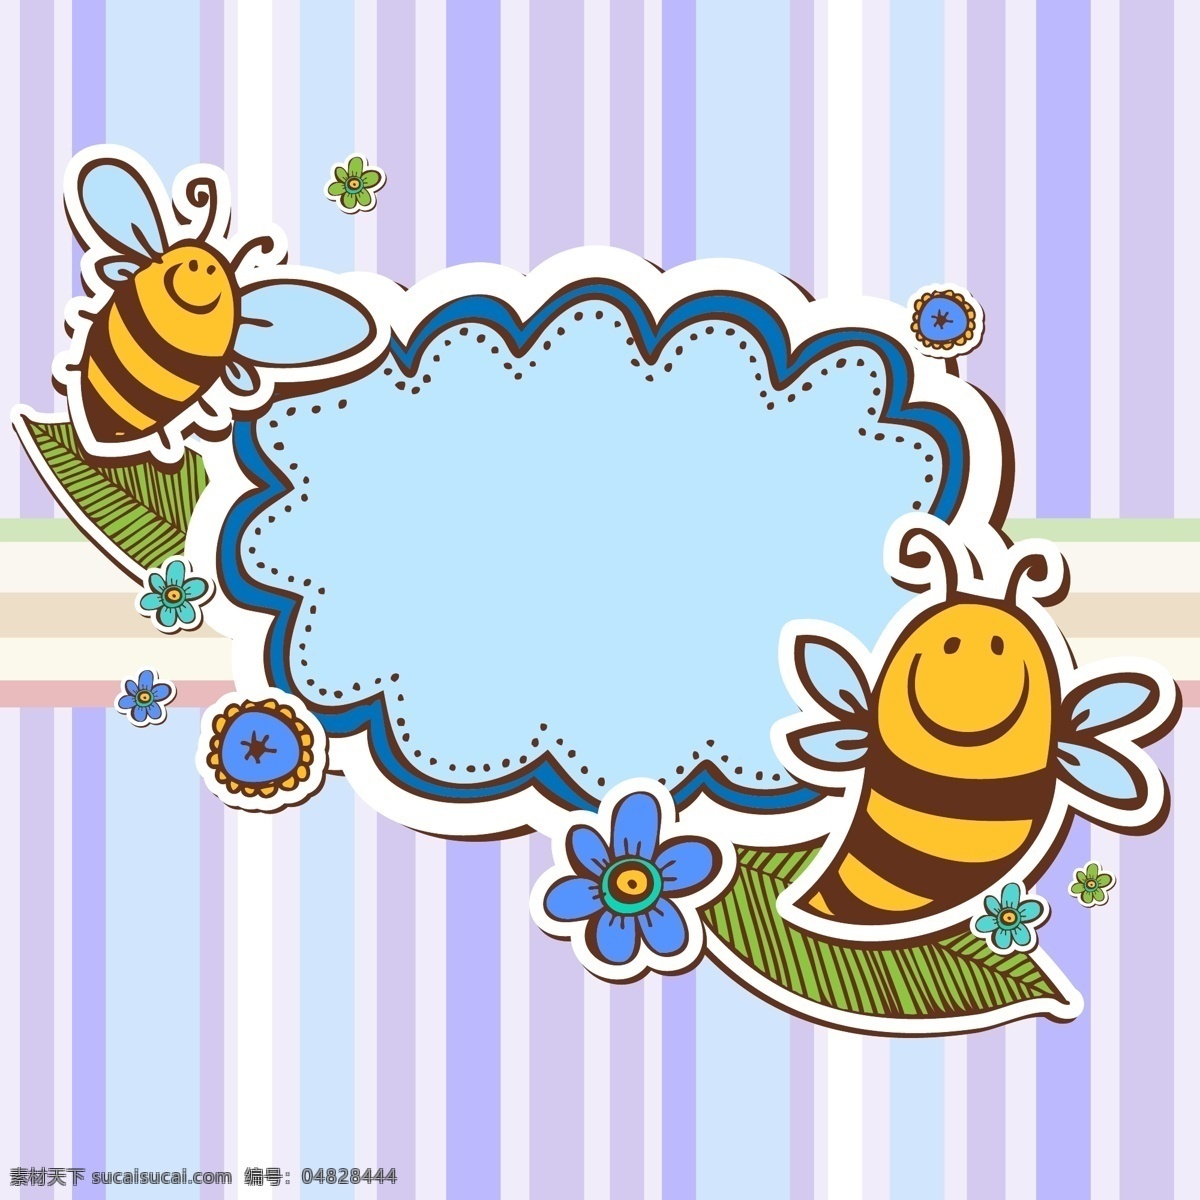 创意 蜜蜂 剪贴 语言 框 矢量 花卉 叶子 条纹 昆虫 语言框 矢量图